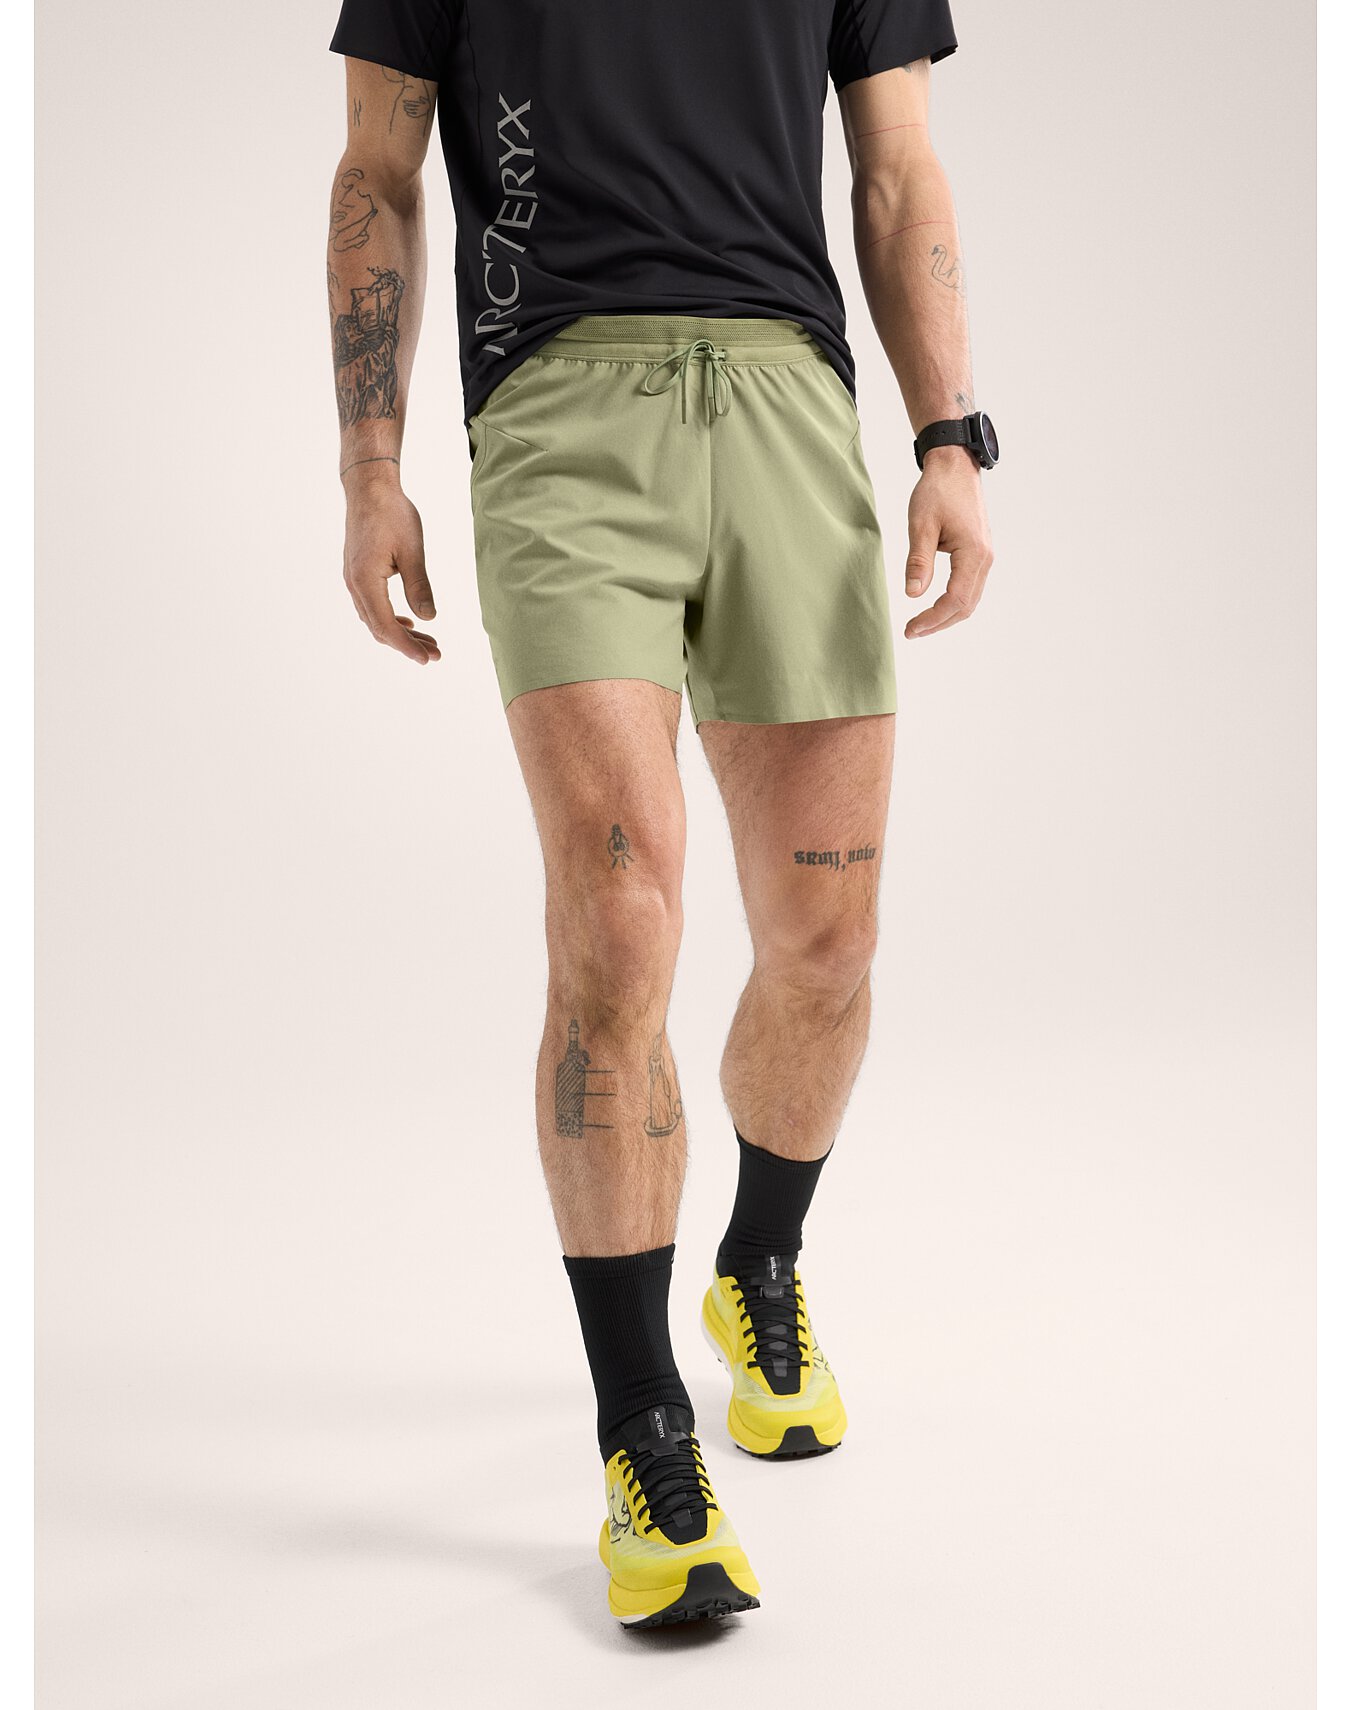 Men's Shorts | Arc'teryx